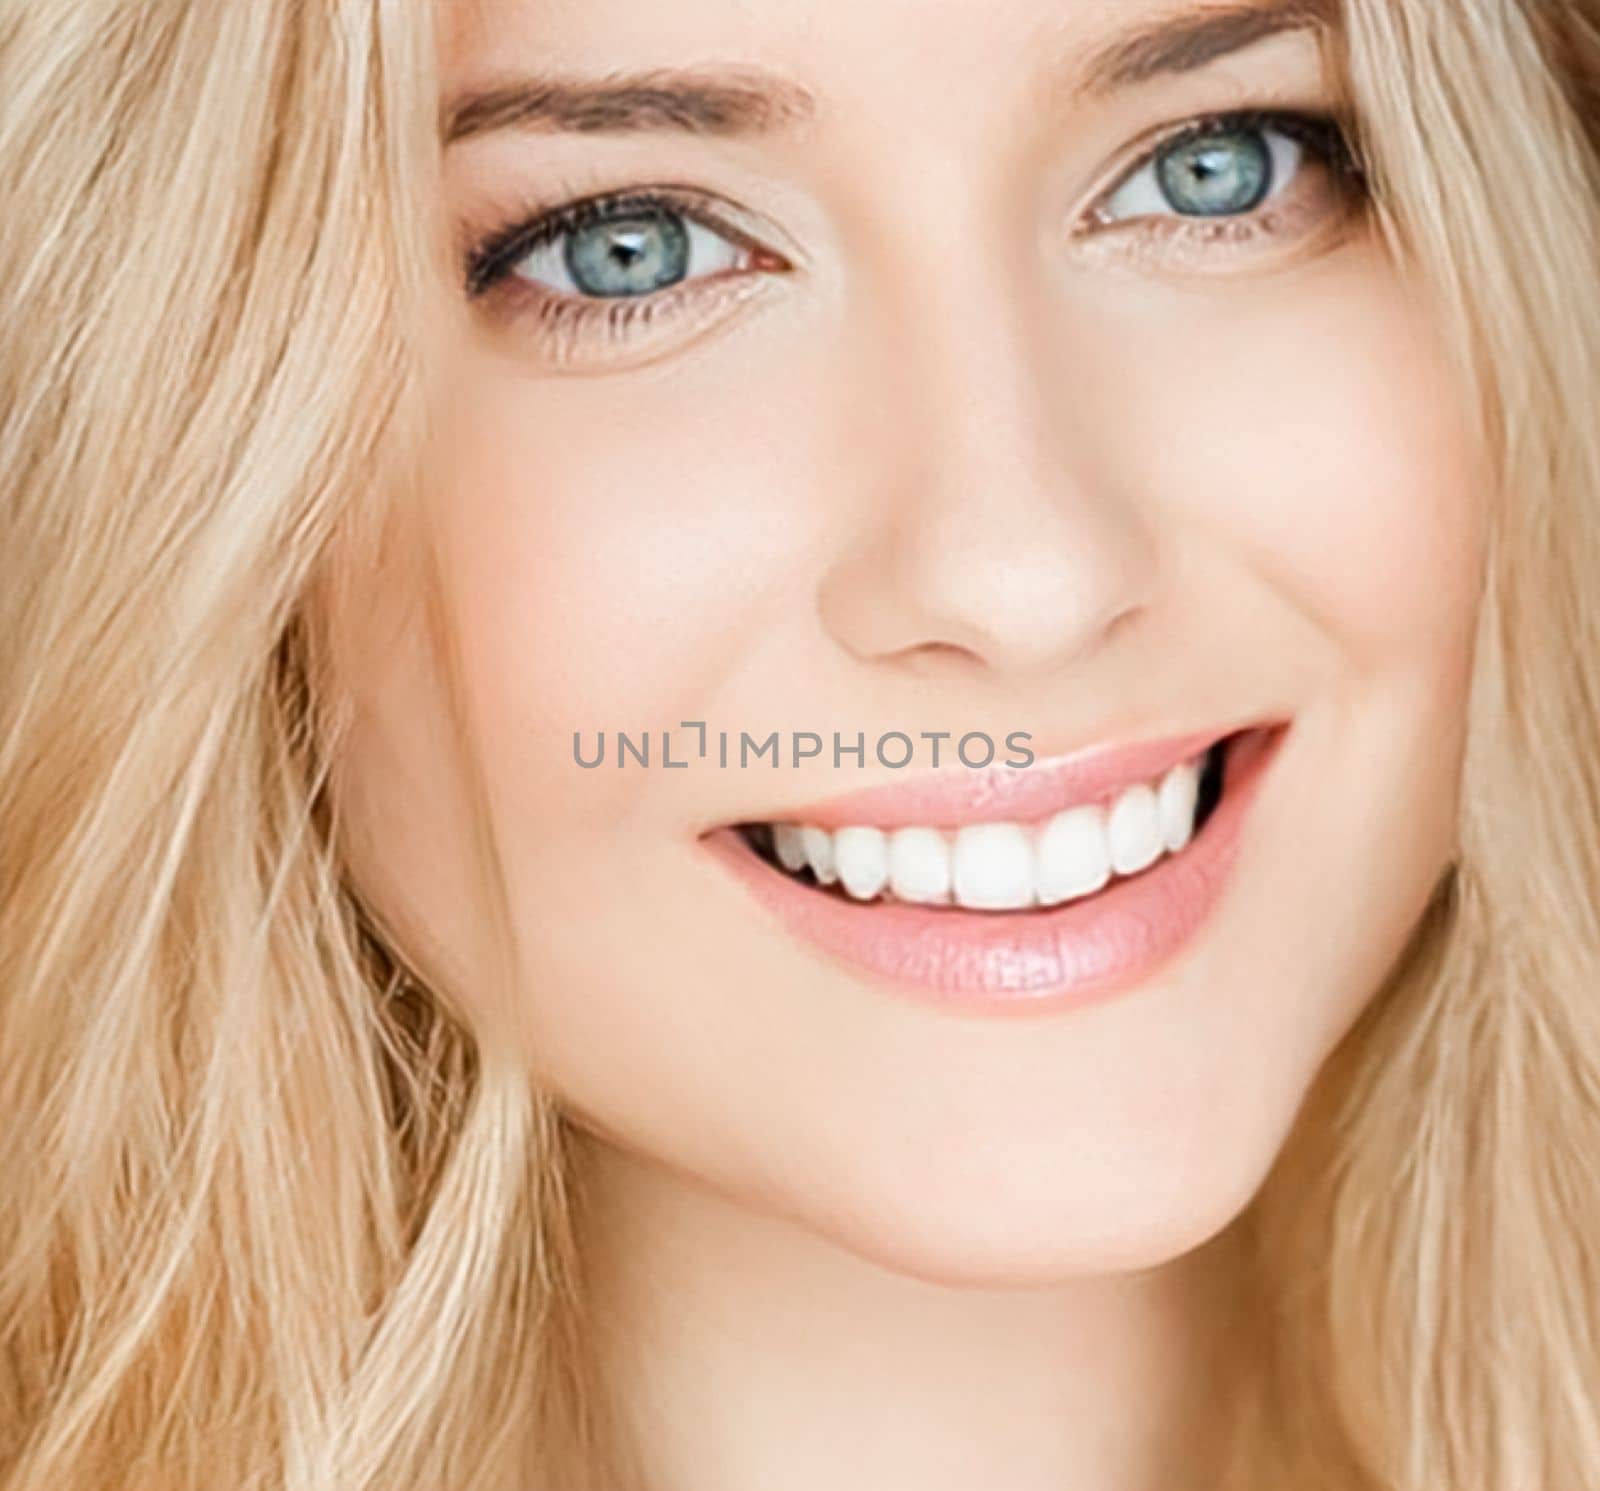 Beautiful blonde woman smiling, white teeth smile.